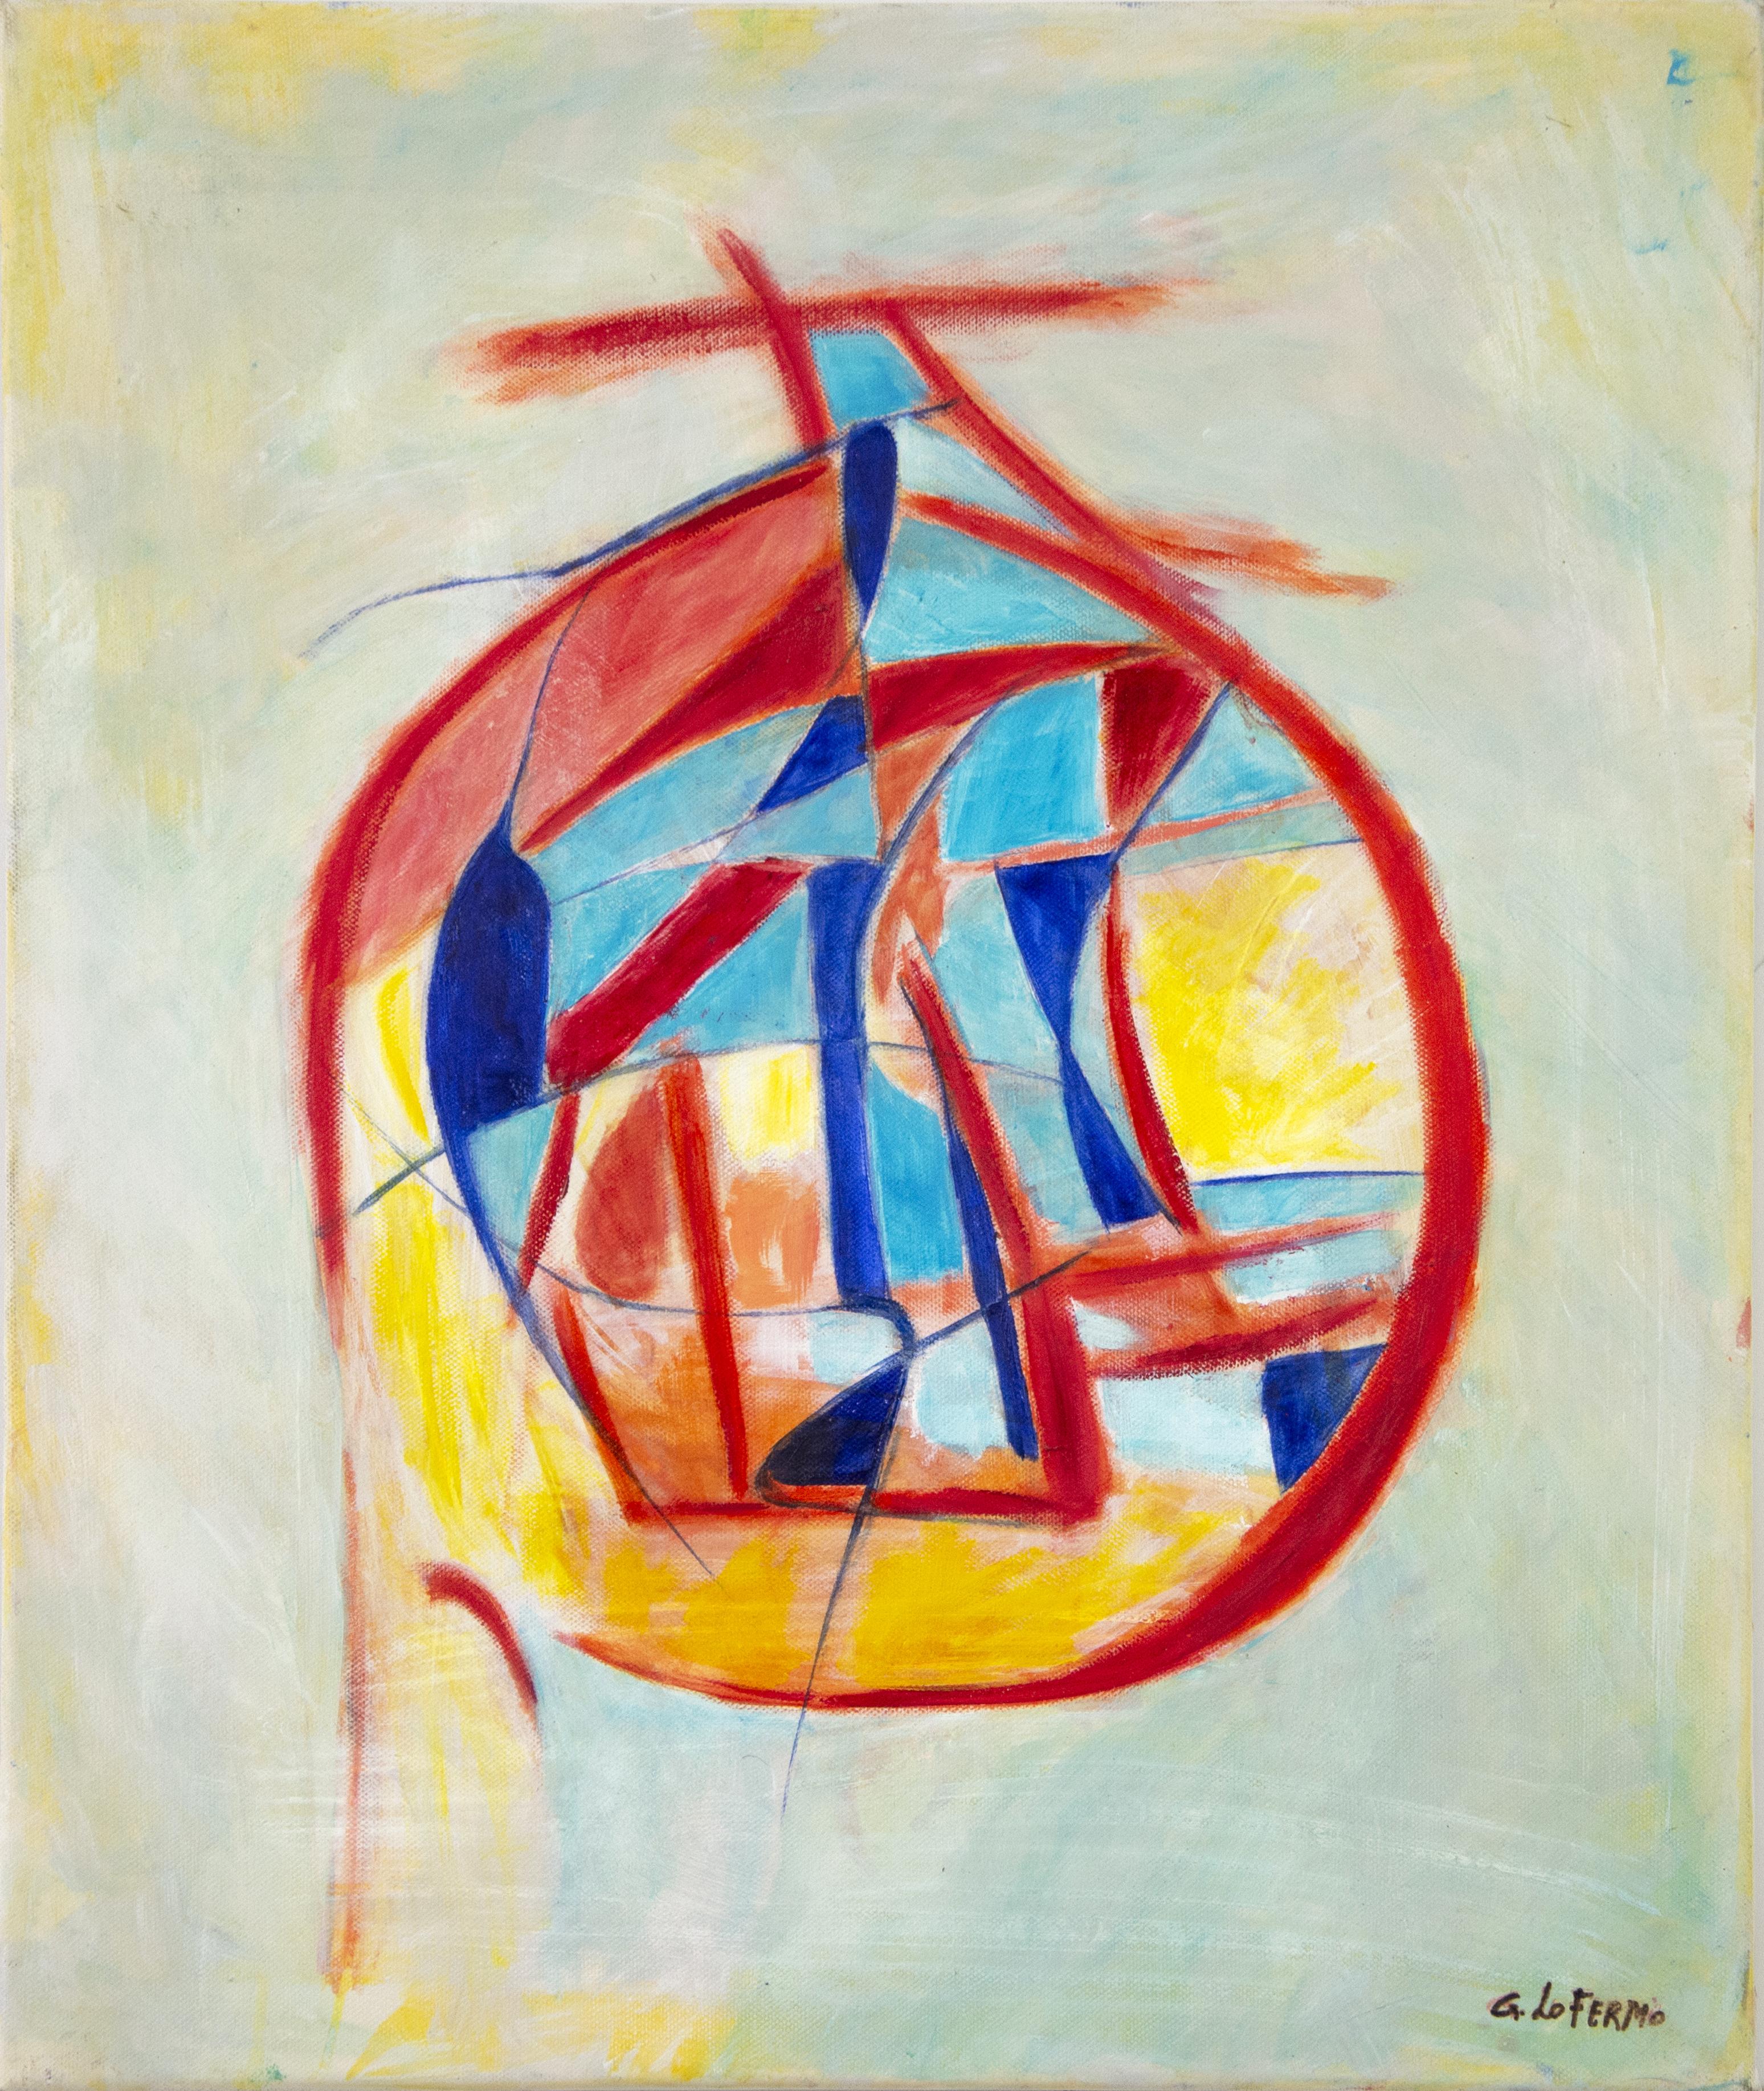 La boule - Peinture à l'huile de Giorgio Lo Fermo, 2020